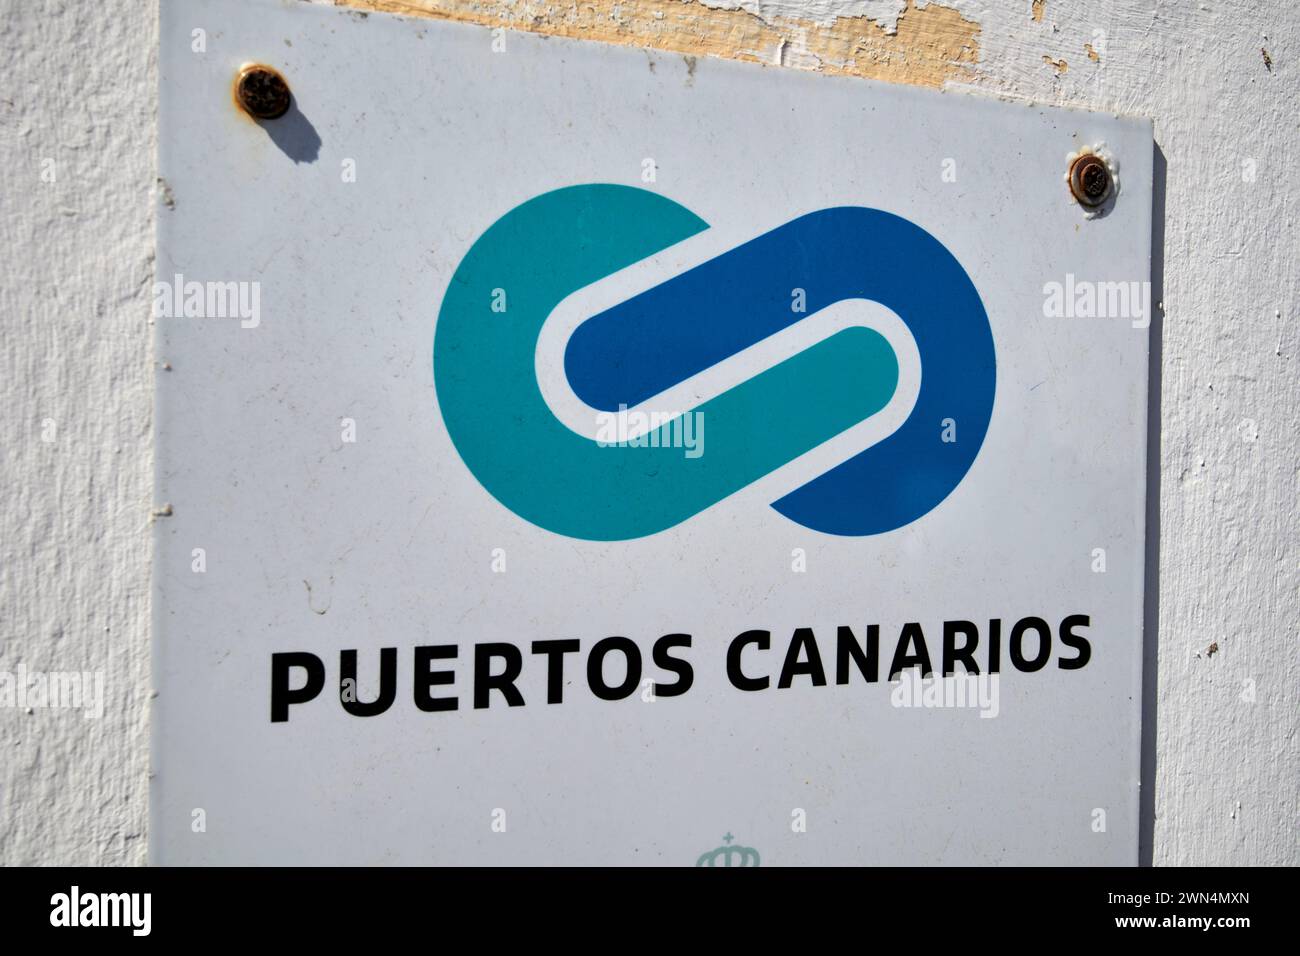 Puertos canarios logo et signe dans le port de Corralejo, fuerteventura, îles Canaries, espagne Banque D'Images